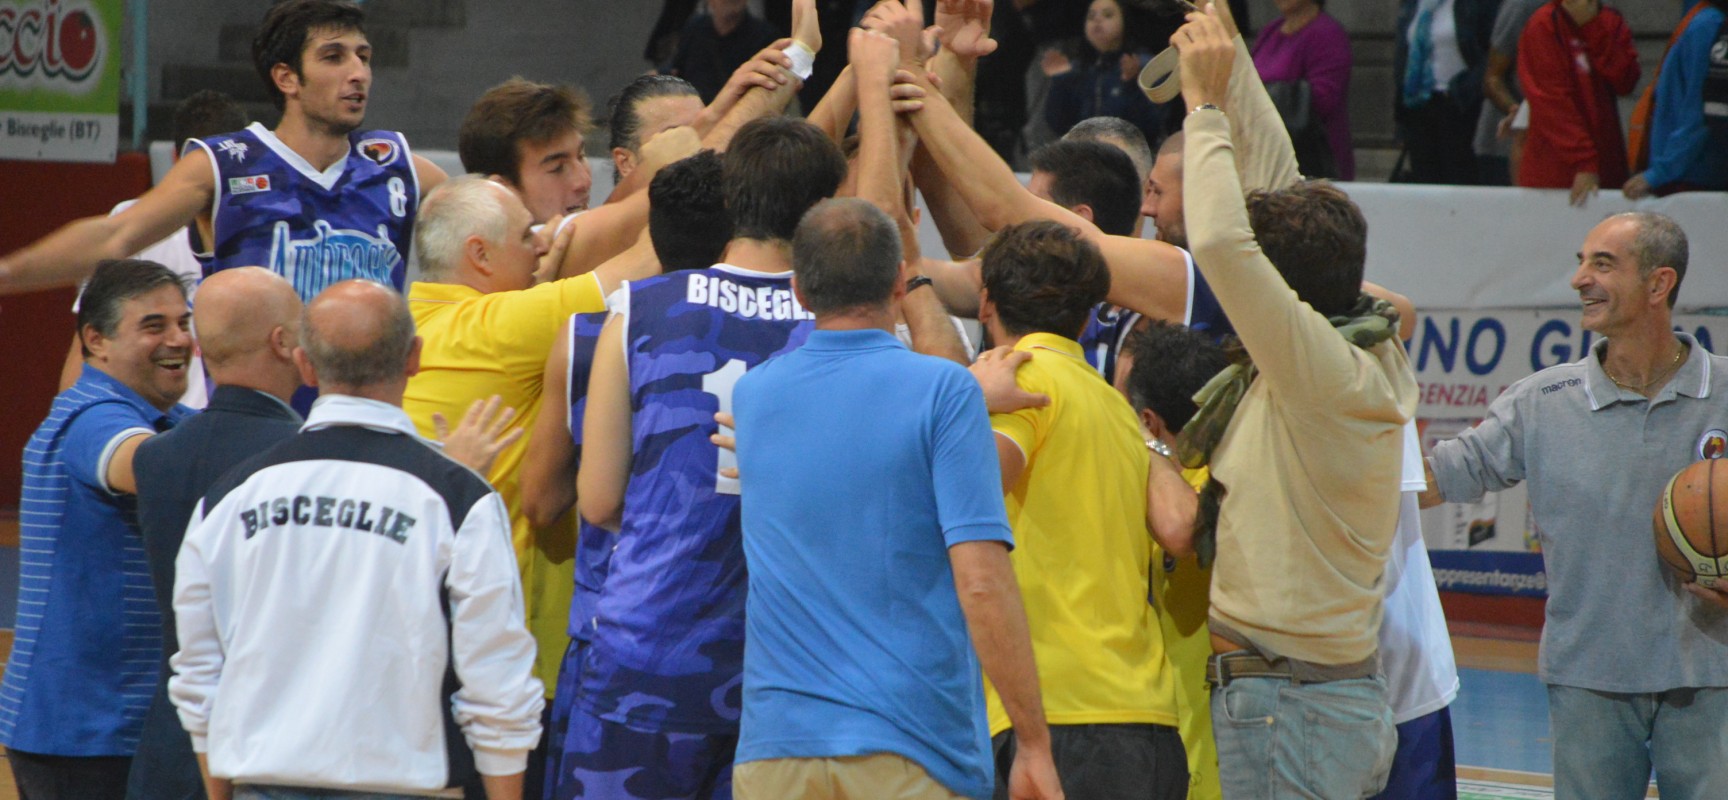 Esordio vincente dell’Ambrosia basket Bisceglie contro la quotata Palermo